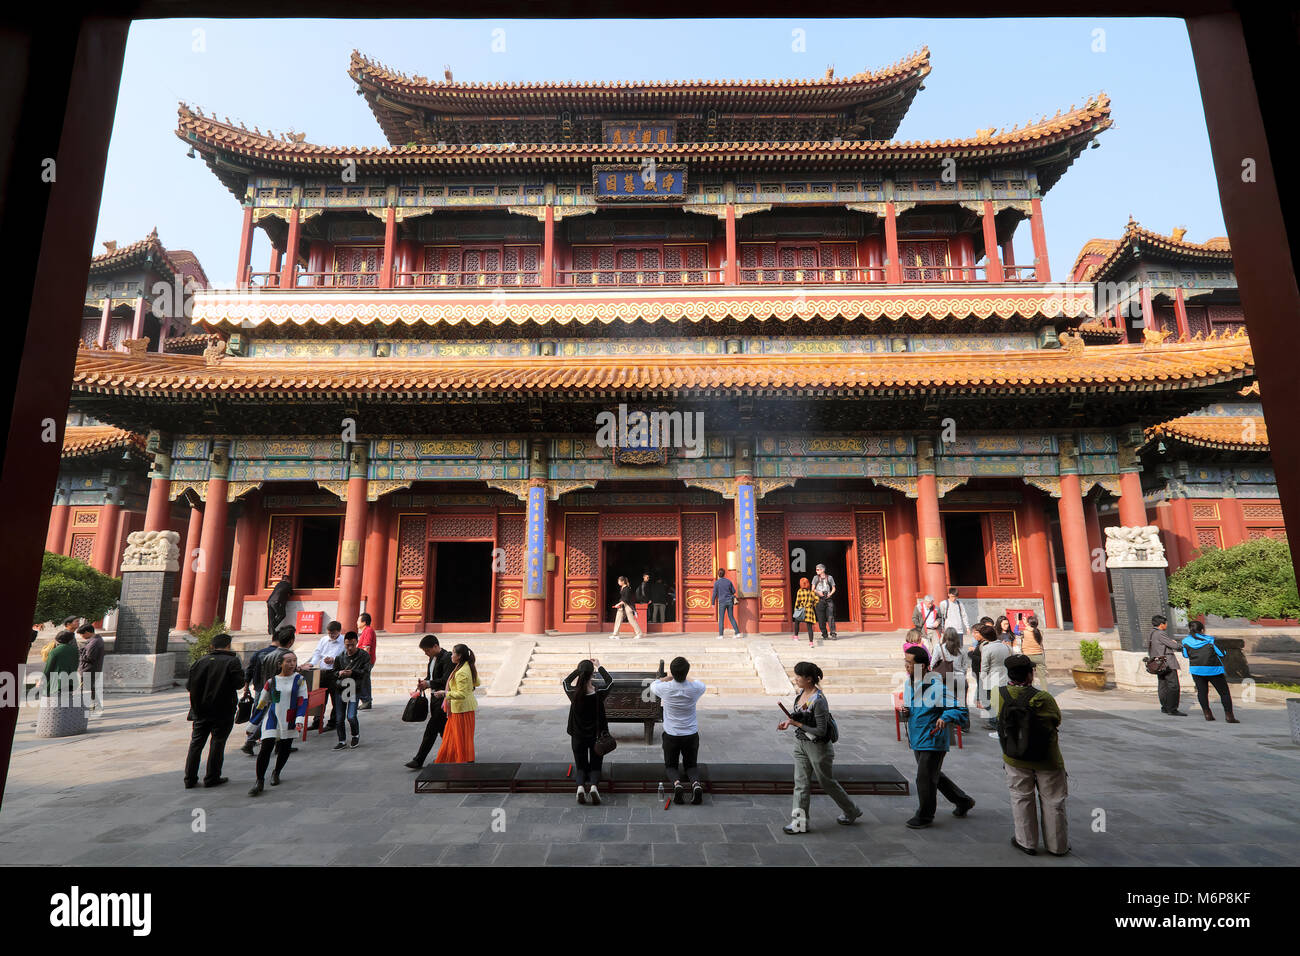 Le Temple du Lama bouddhiste ou Temple de Yonghe Lamaserie, Dongcheng District, Beijing, Chine Banque D'Images